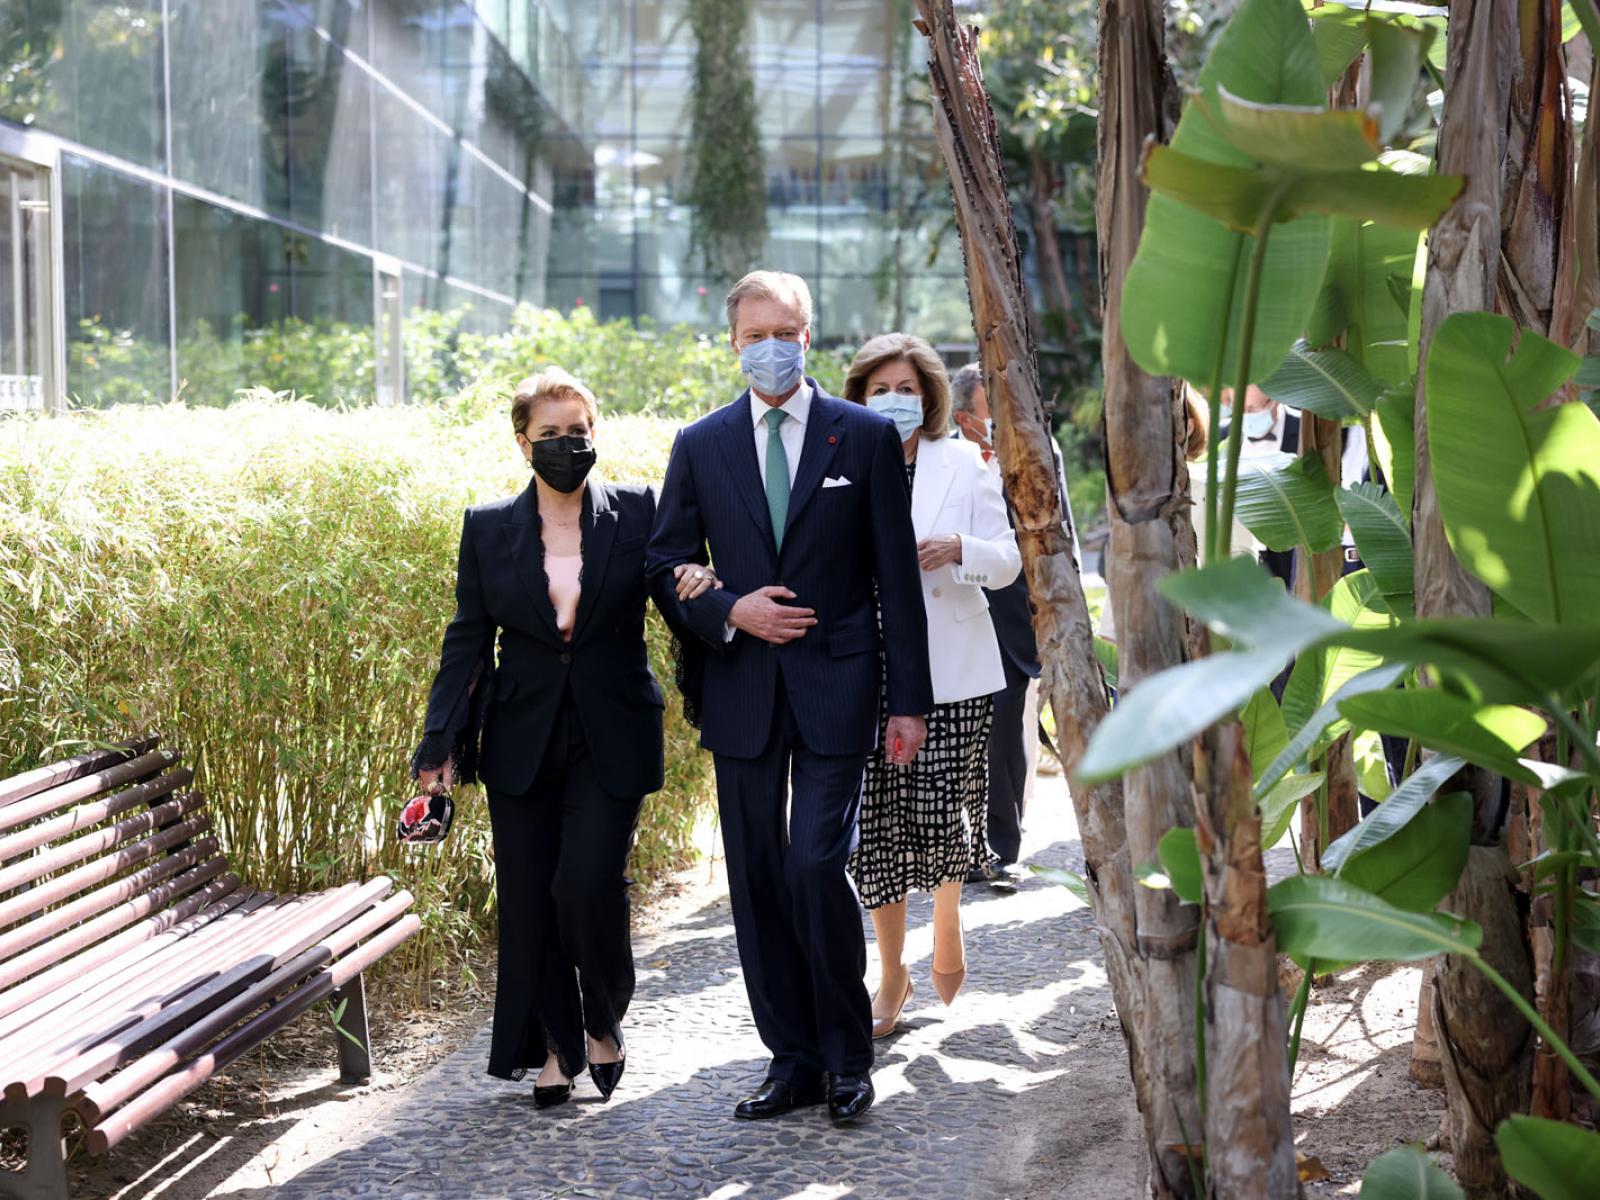 Le Couple grand-ducal visite le jardin botanique